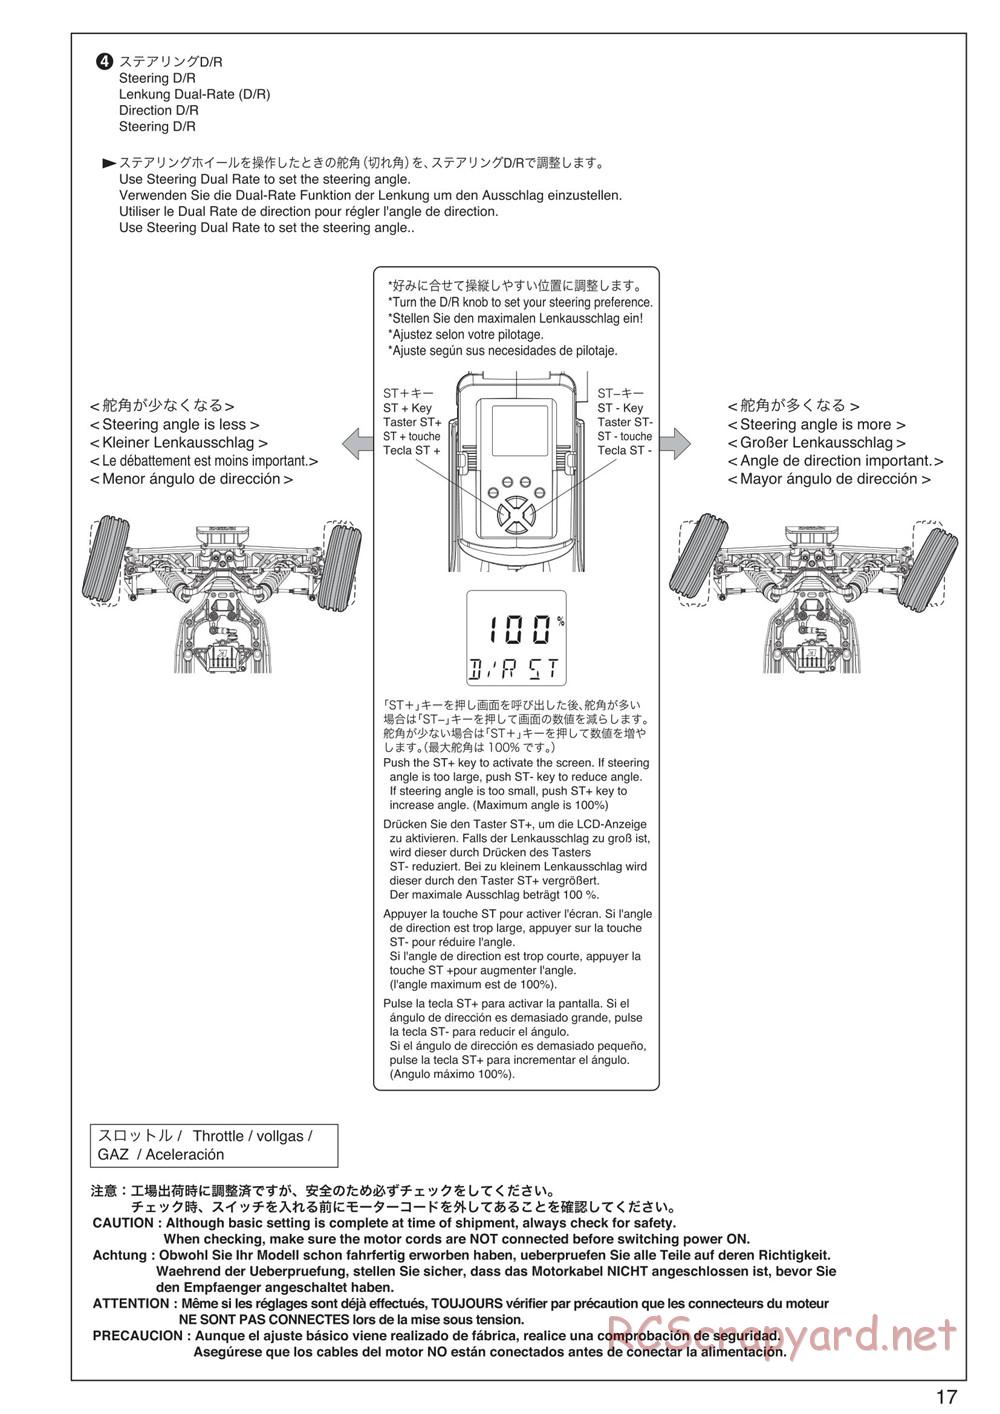 Kyosho - Scorpion XXL VE - Manual - Page 17